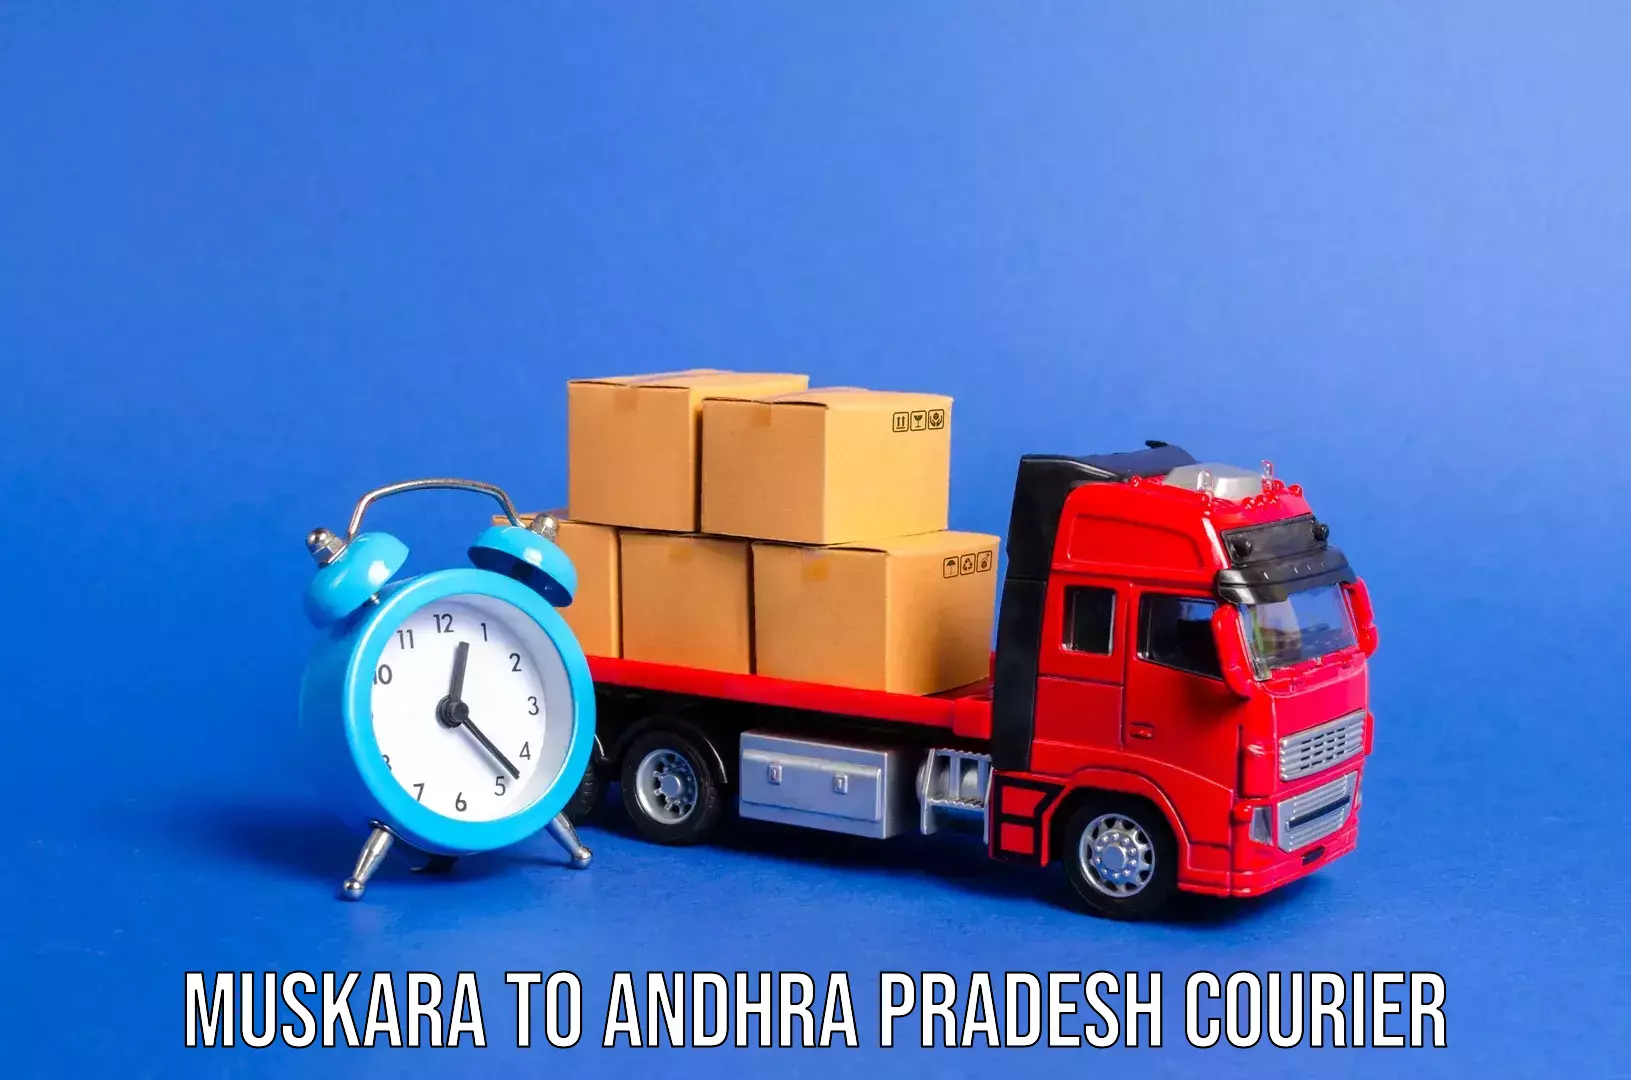 Luggage transport company Muskara to Andhra Pradesh